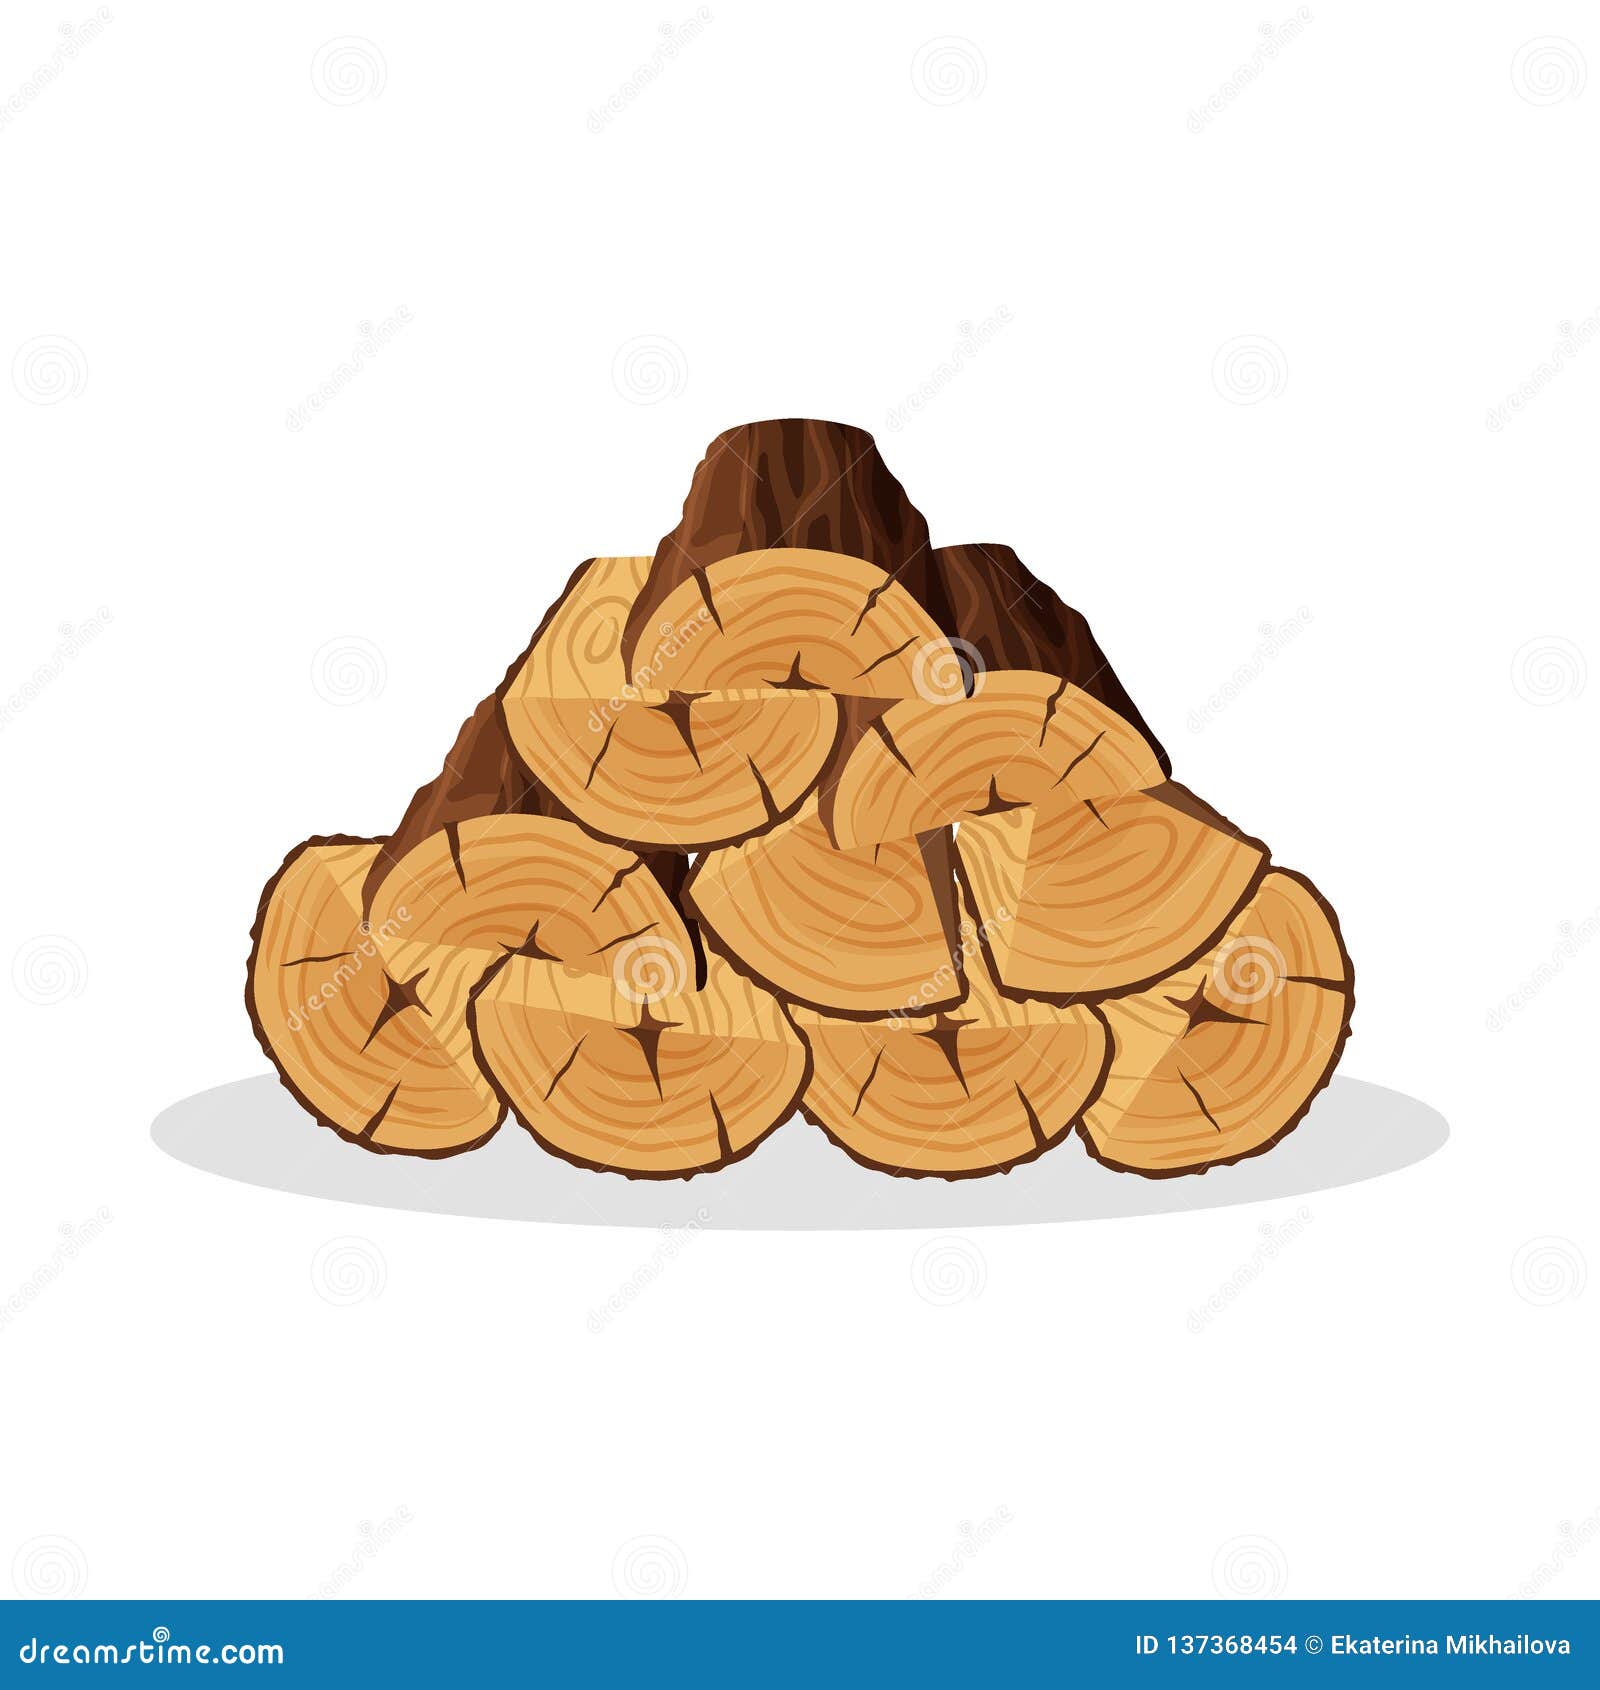 Lumberjack Tools® Wood Burning Stencil - Trout